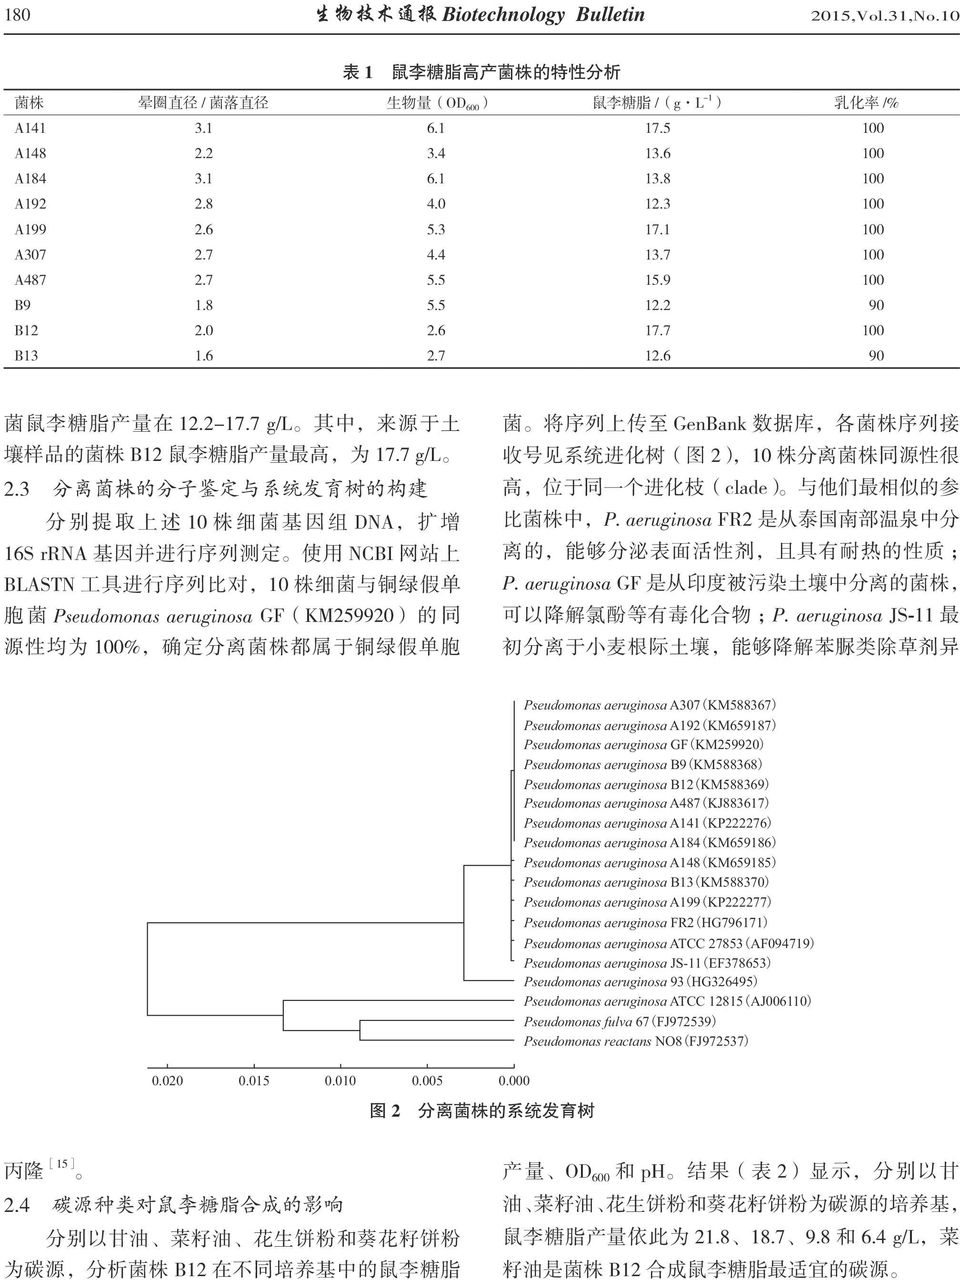 3 分离菌株的分子鉴定与系统发育树的构建 高 位于同一个进化枝 clade 与他们最相似的参 分 别 提 取 上 述 1 株 细 菌 基 因 组 DNA 扩 增 比菌株中 P. aeruginosa FR2 是从泰国南部温泉中分 16S rrna 基因并进行序列测定 使用 NCBI 网站上 离的 能够分泌表面活性剂 且具有耐热的性质 BLASTN 工具进行序列比对 1 株细菌与铜绿假单 P.